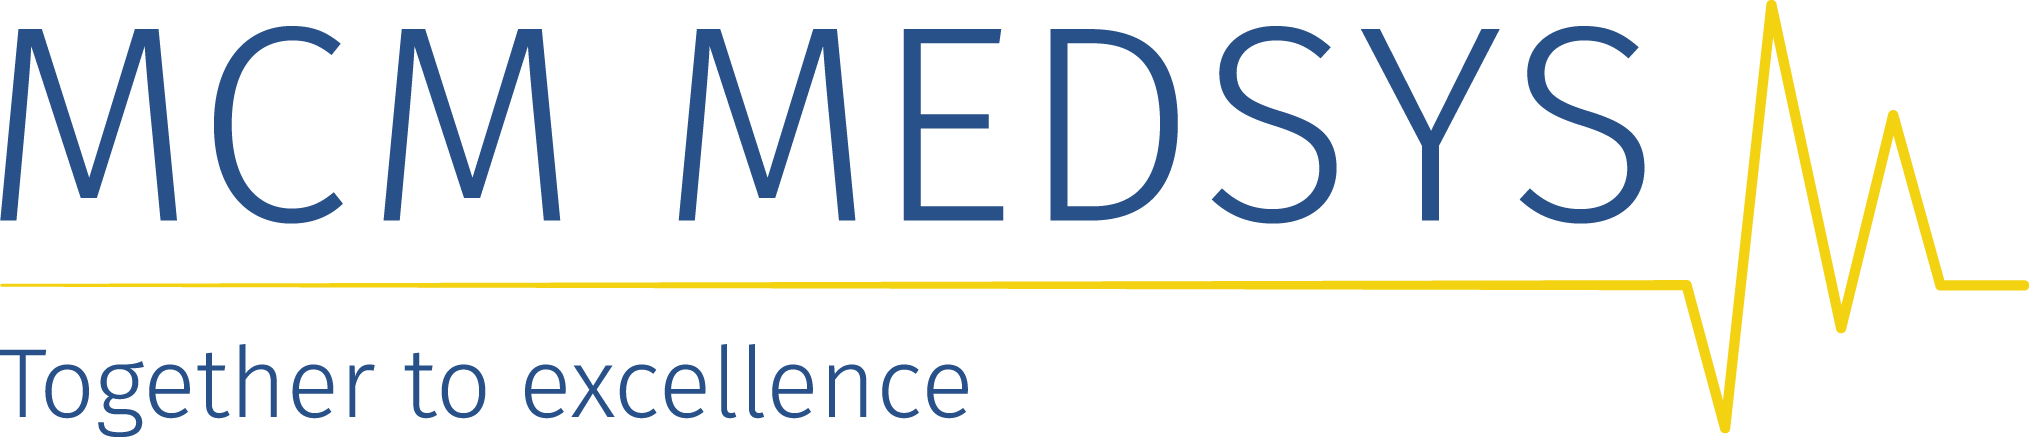 MCM MEDSYS logo